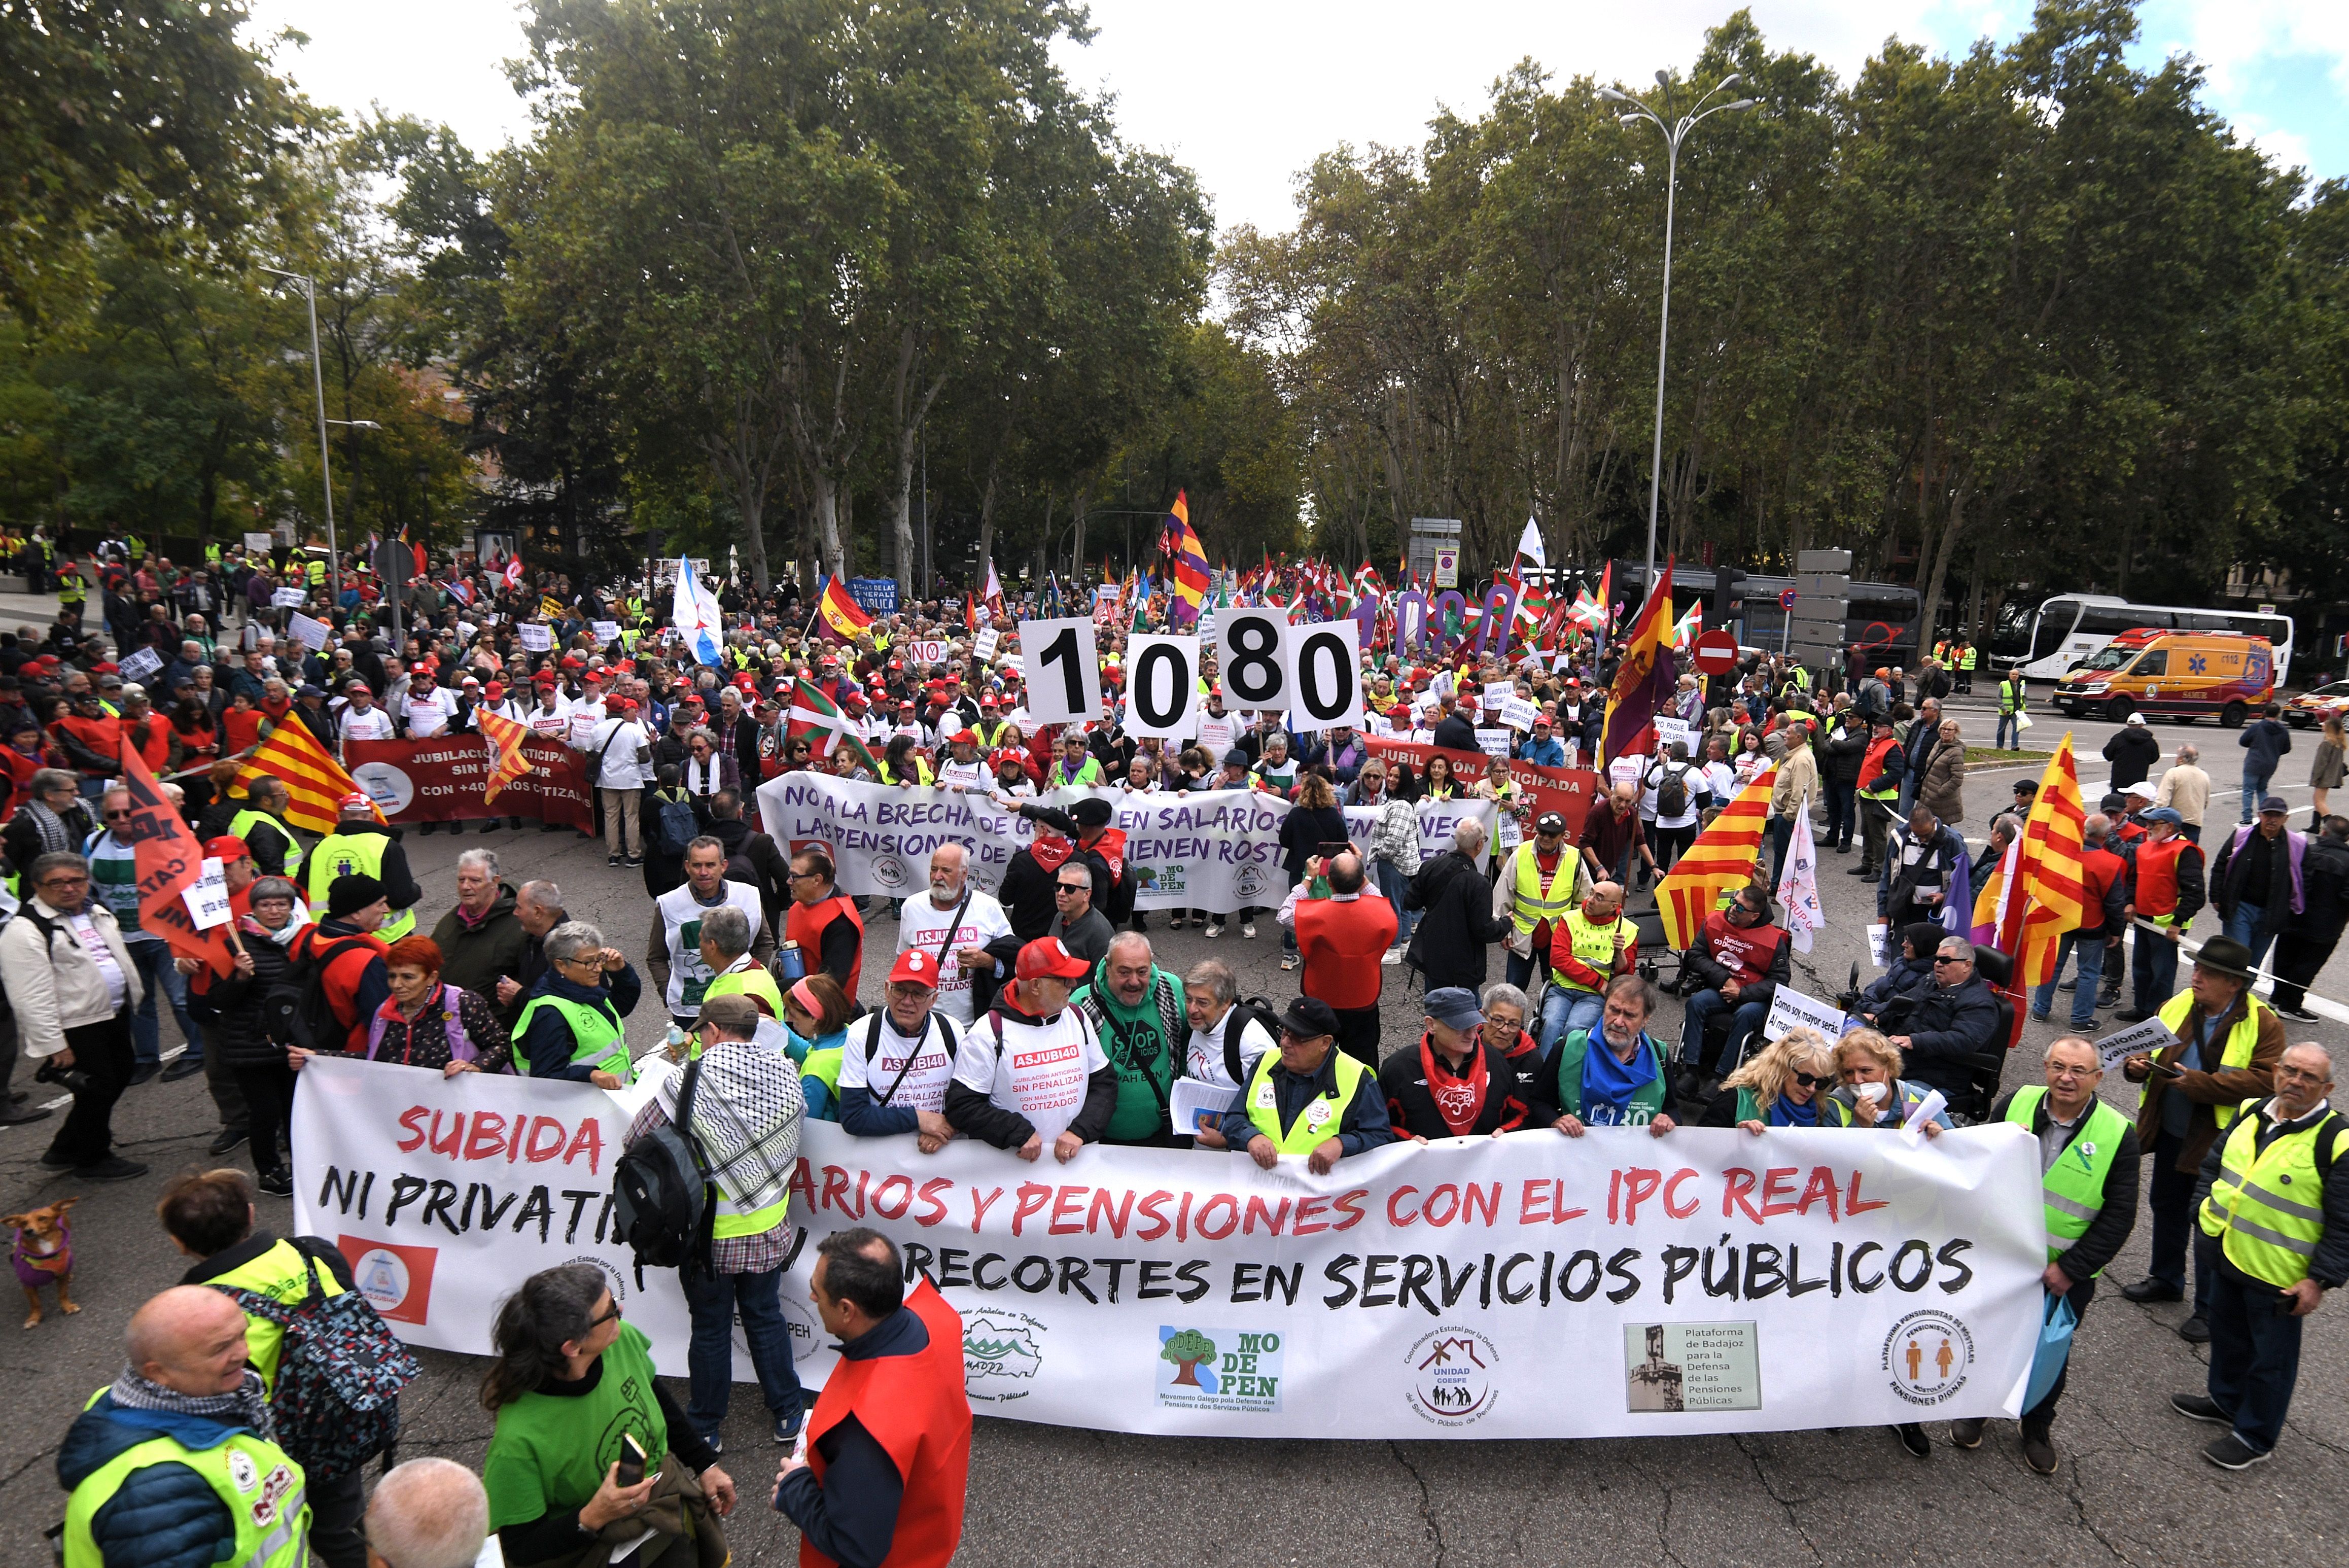 Los pensionistas salen a la calle para exigir una pensión mínima de 1.080 euros